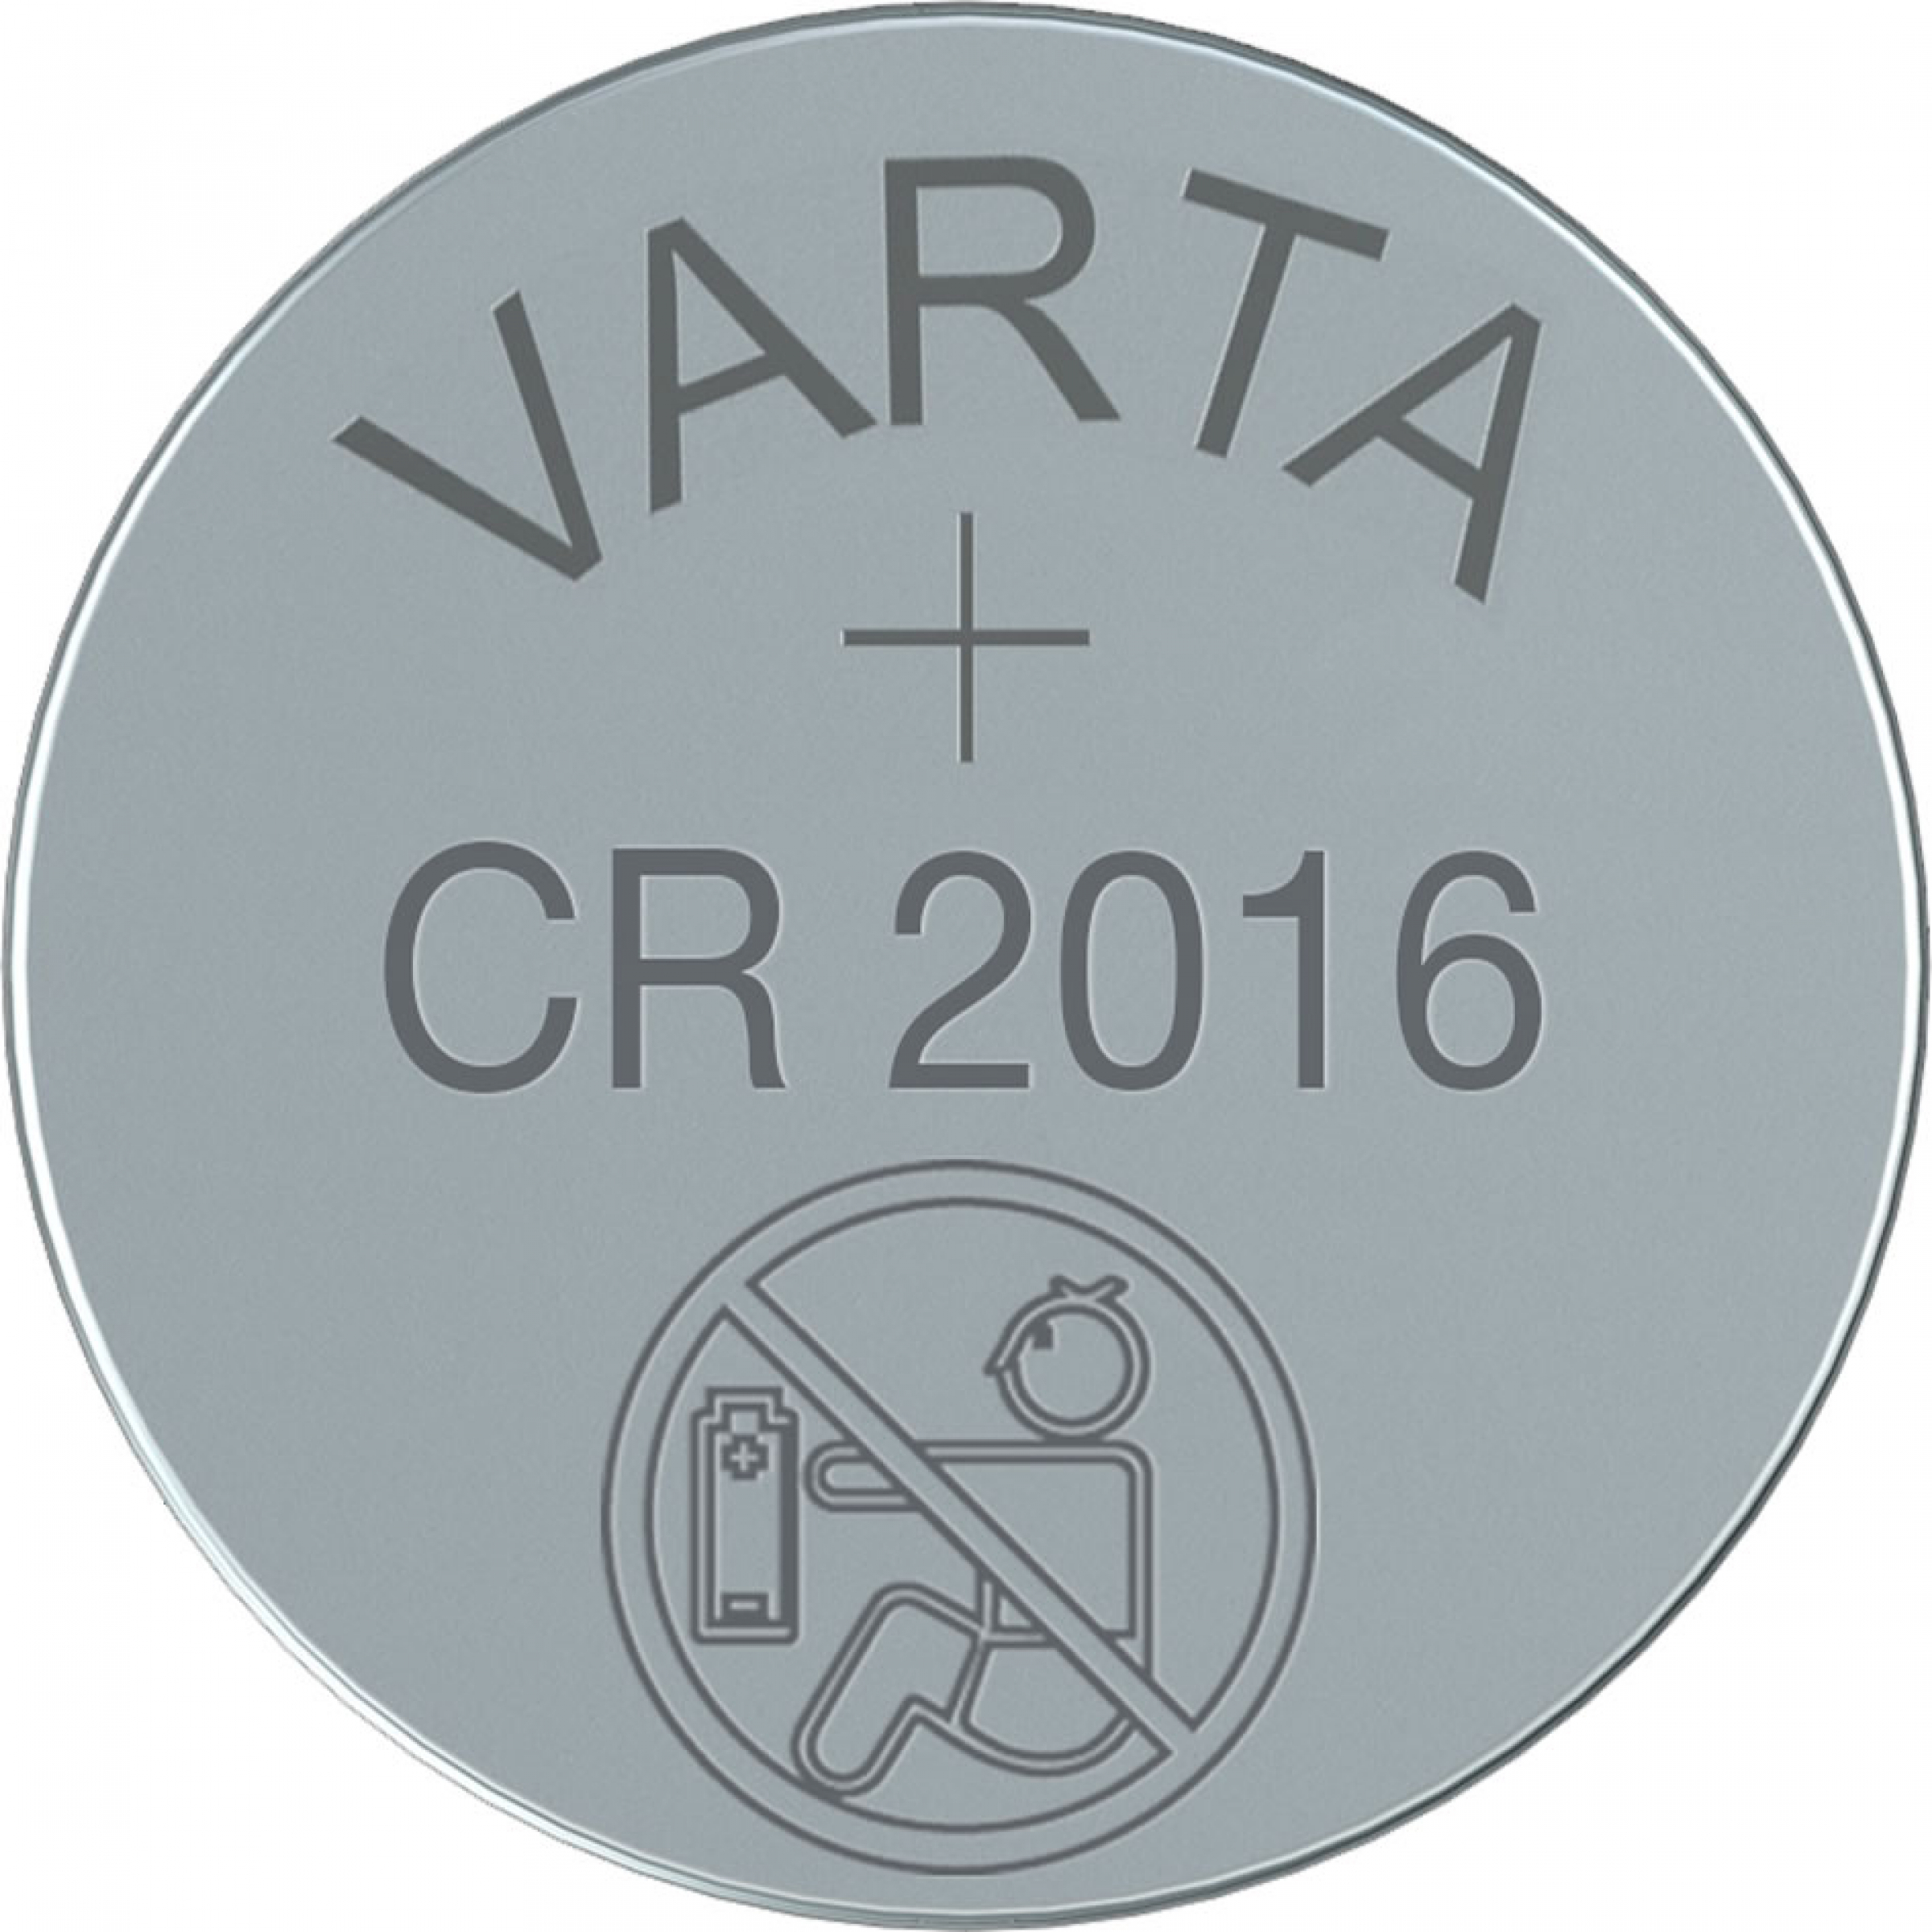 Varta Lithium Knopfzelle CR 2016 3V - 5er Blister